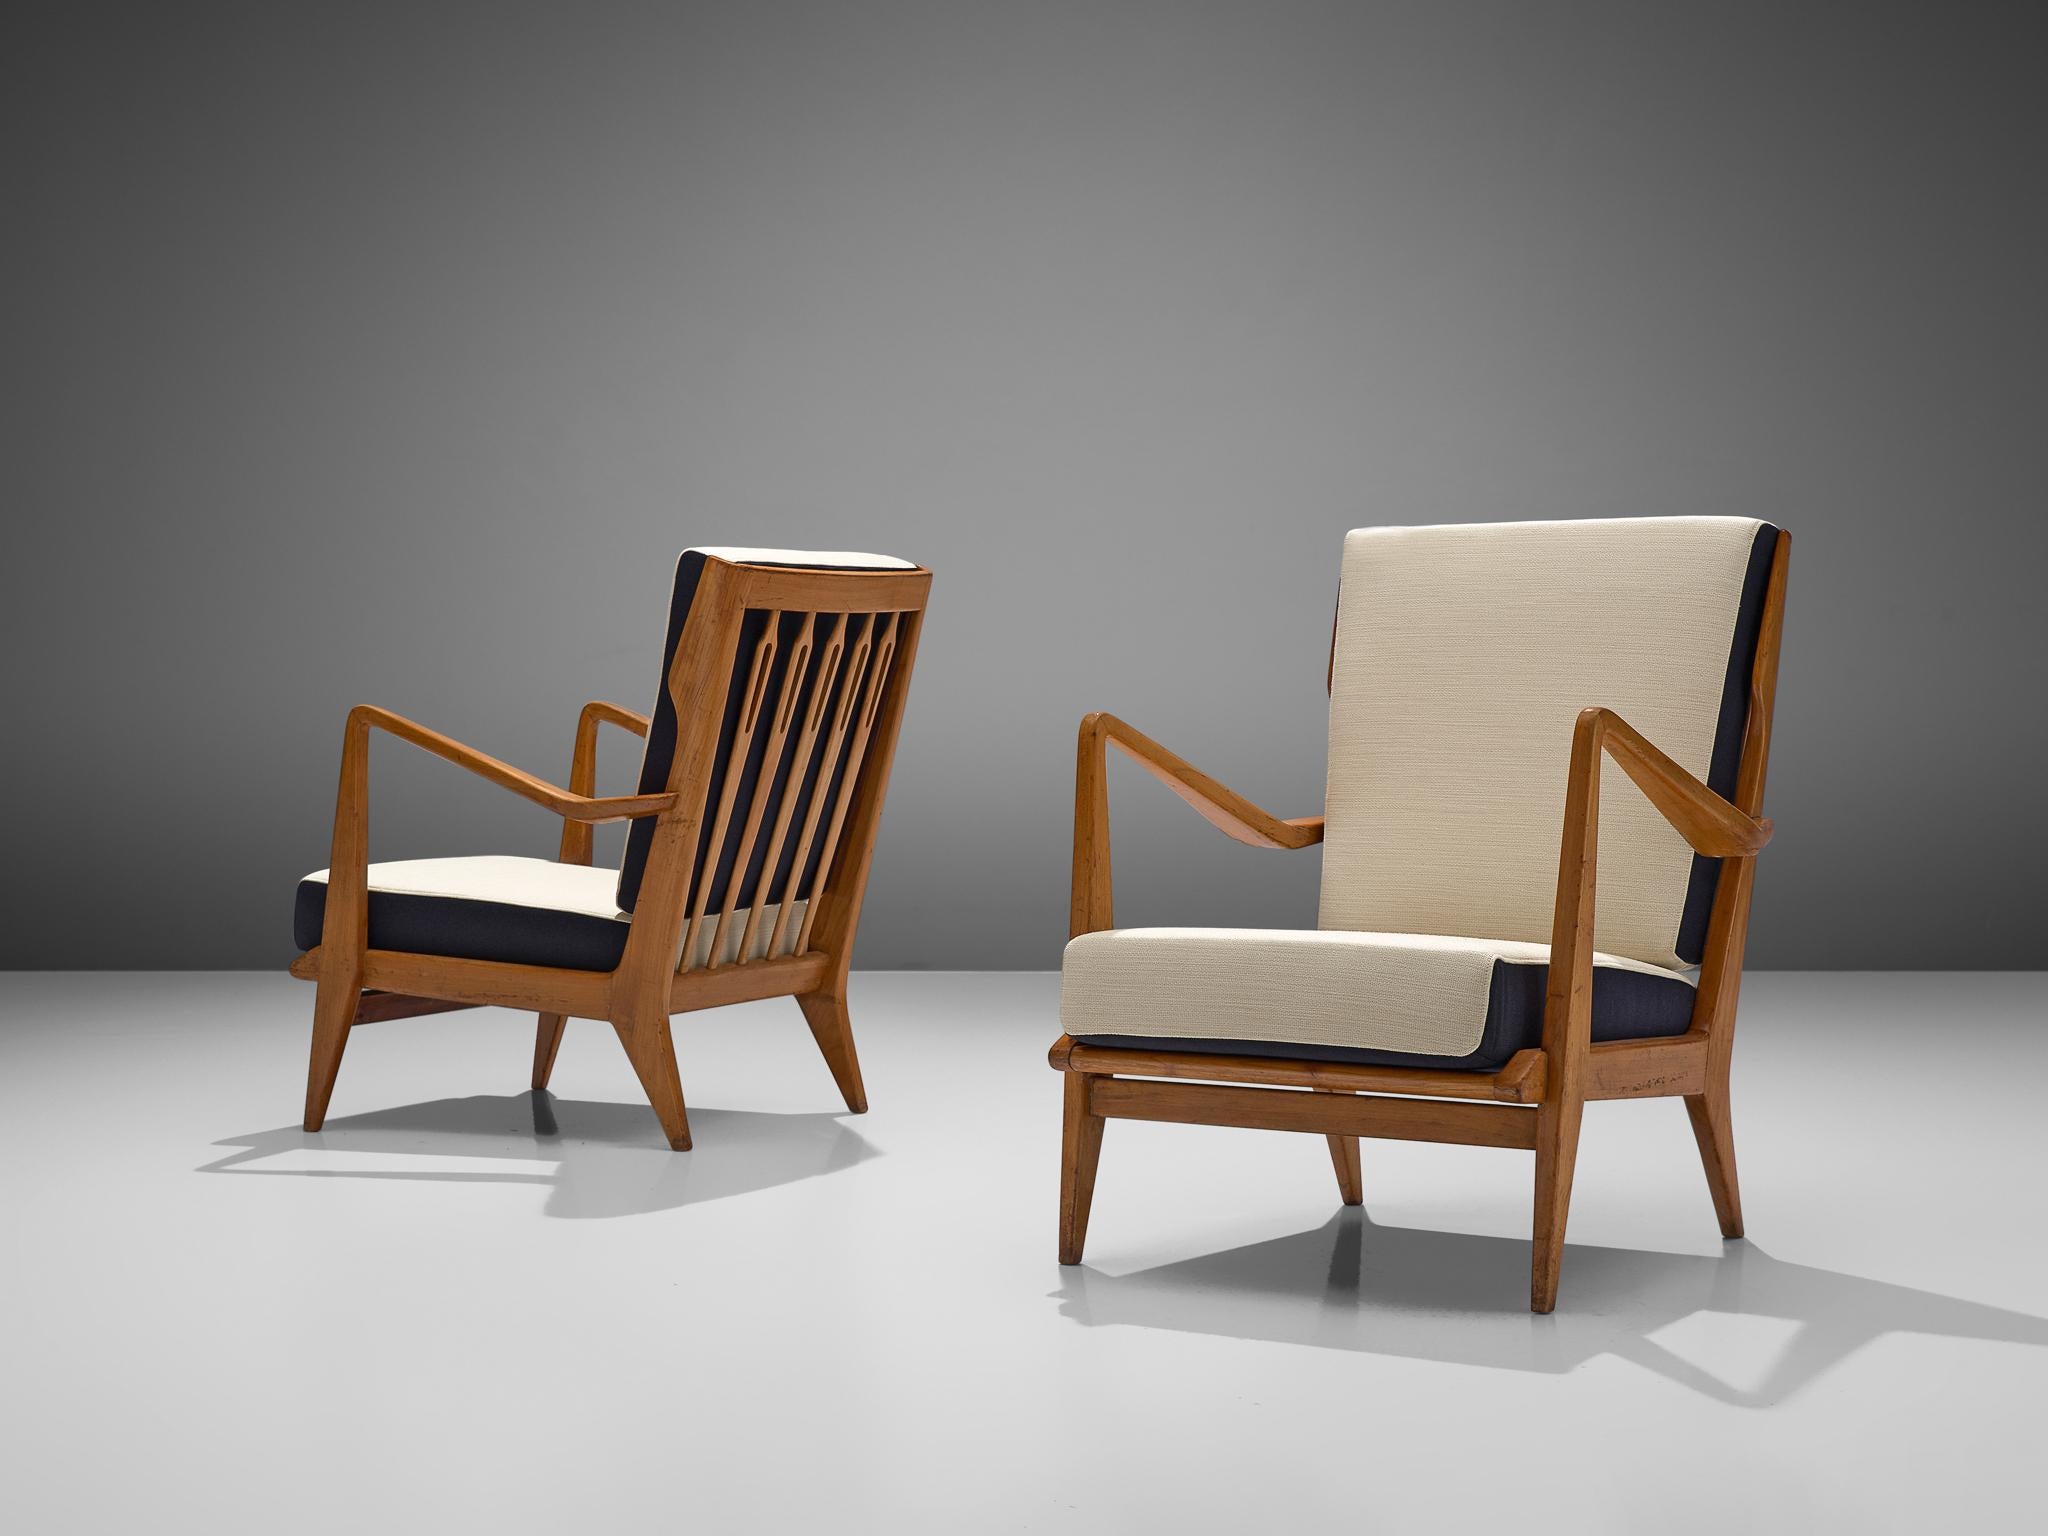 Gio Ponti für Cassina, Sesselpaar, Modell 516, Kirsche, Stoff Kvadrat Balder, Cassina, Italien, 1955.

Dieses Sesselpaar wurde von Gio Ponti entworfen und von Cassina hergestellt. Das Design zeichnet sich durch einige besondere Merkmale aus, die